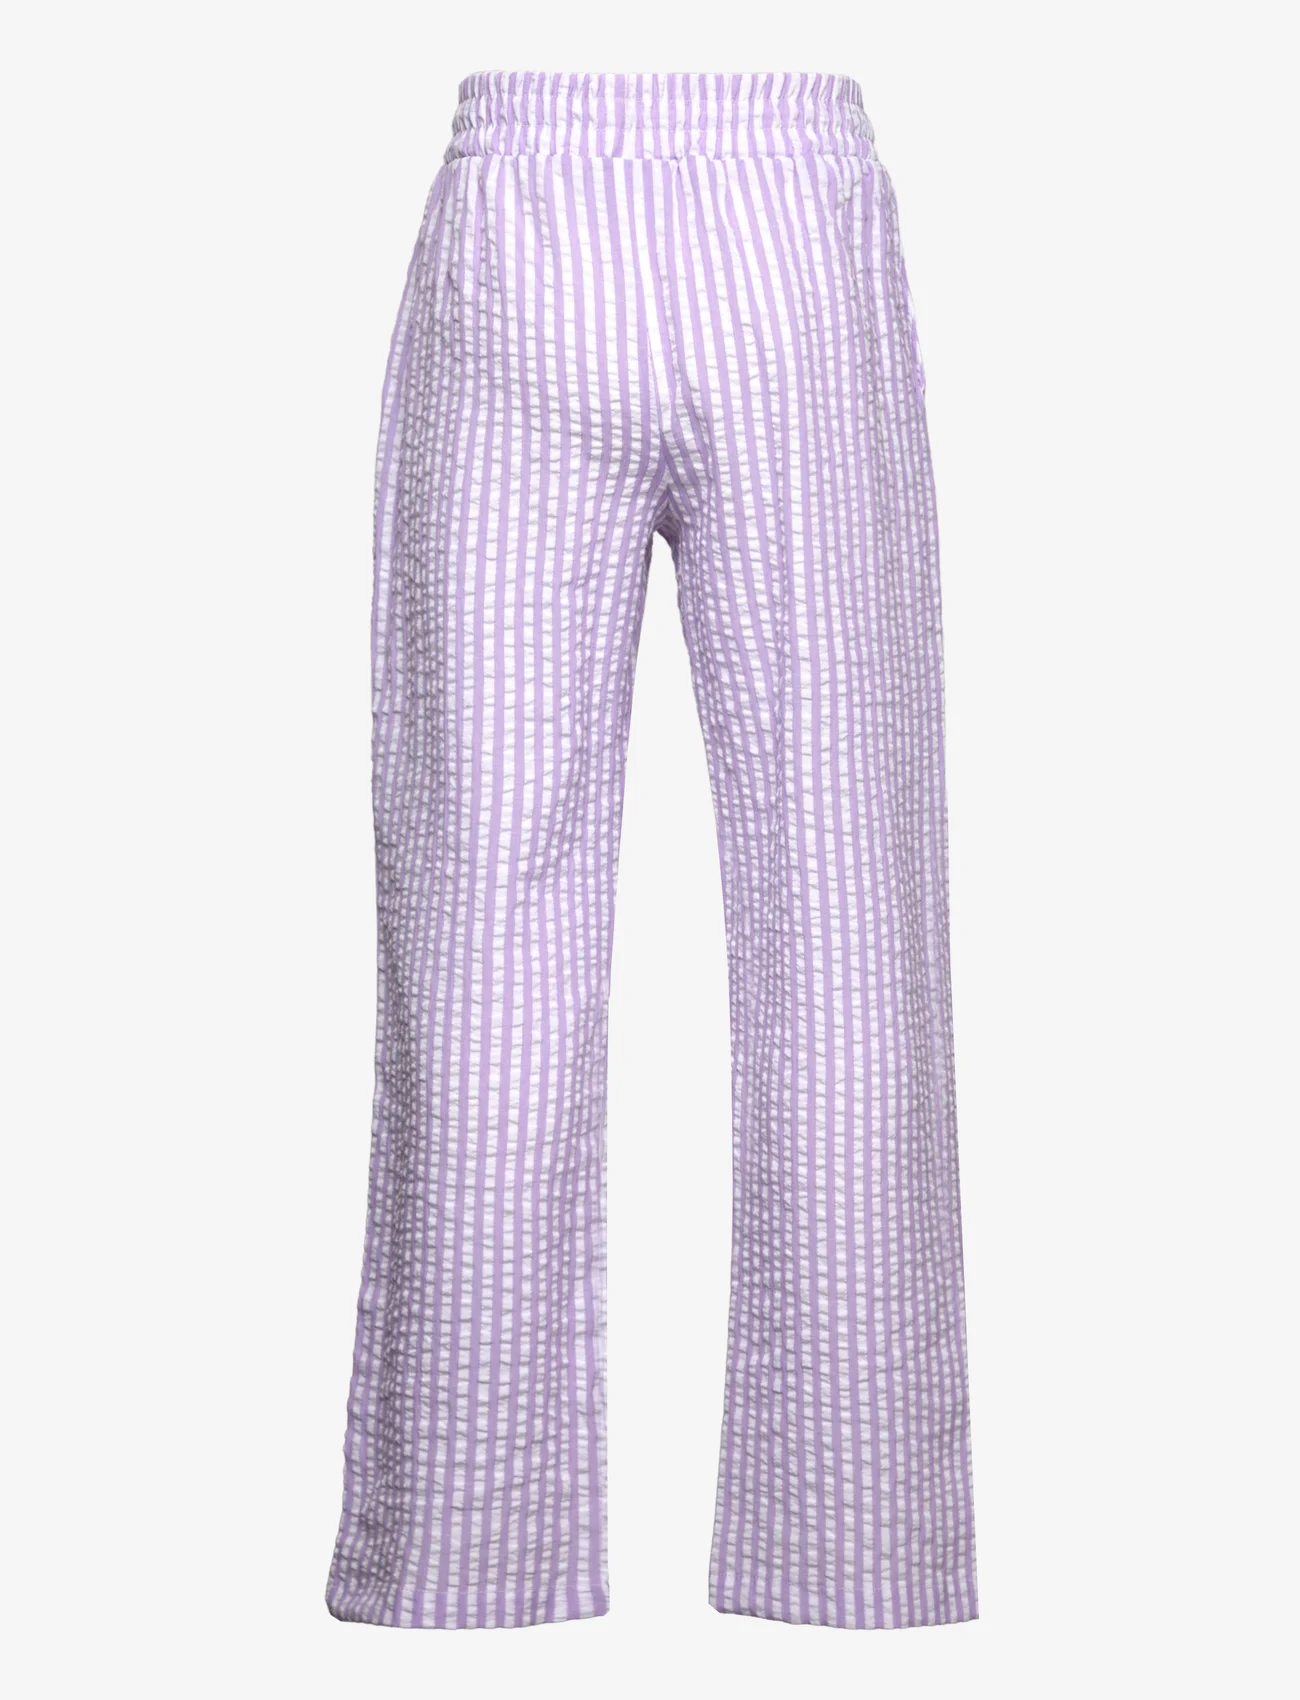 Grunt - Tenna Striped Pant - die niedrigsten preise - purple - 1